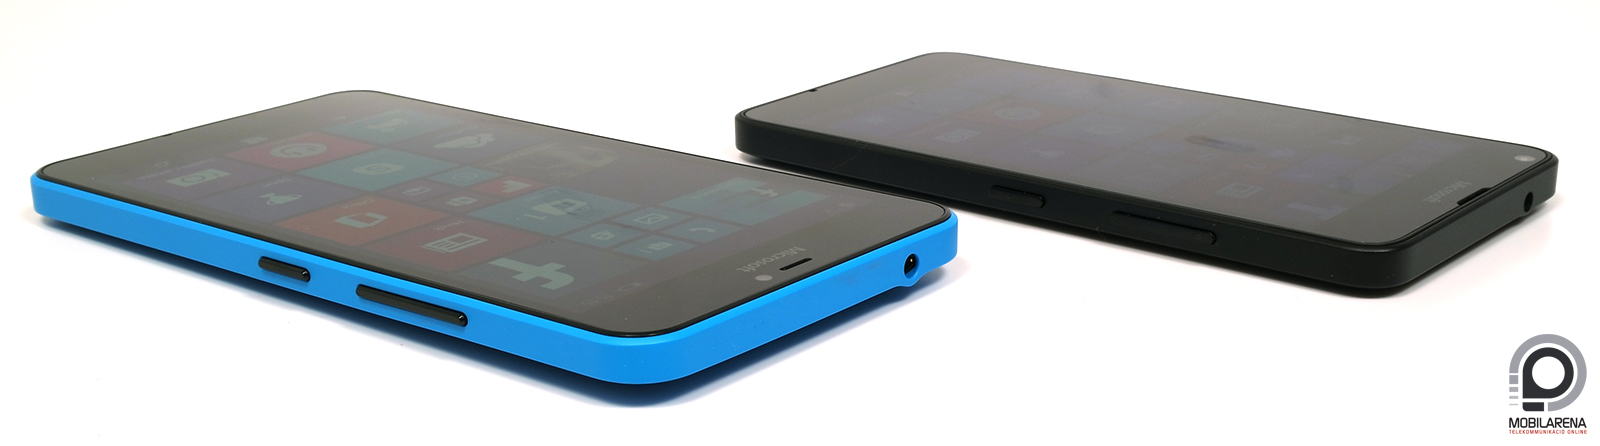 Microsoft Lumia 640 és 640 XL - testvérek egymás között - Mobilarena  Okostelefon teszt